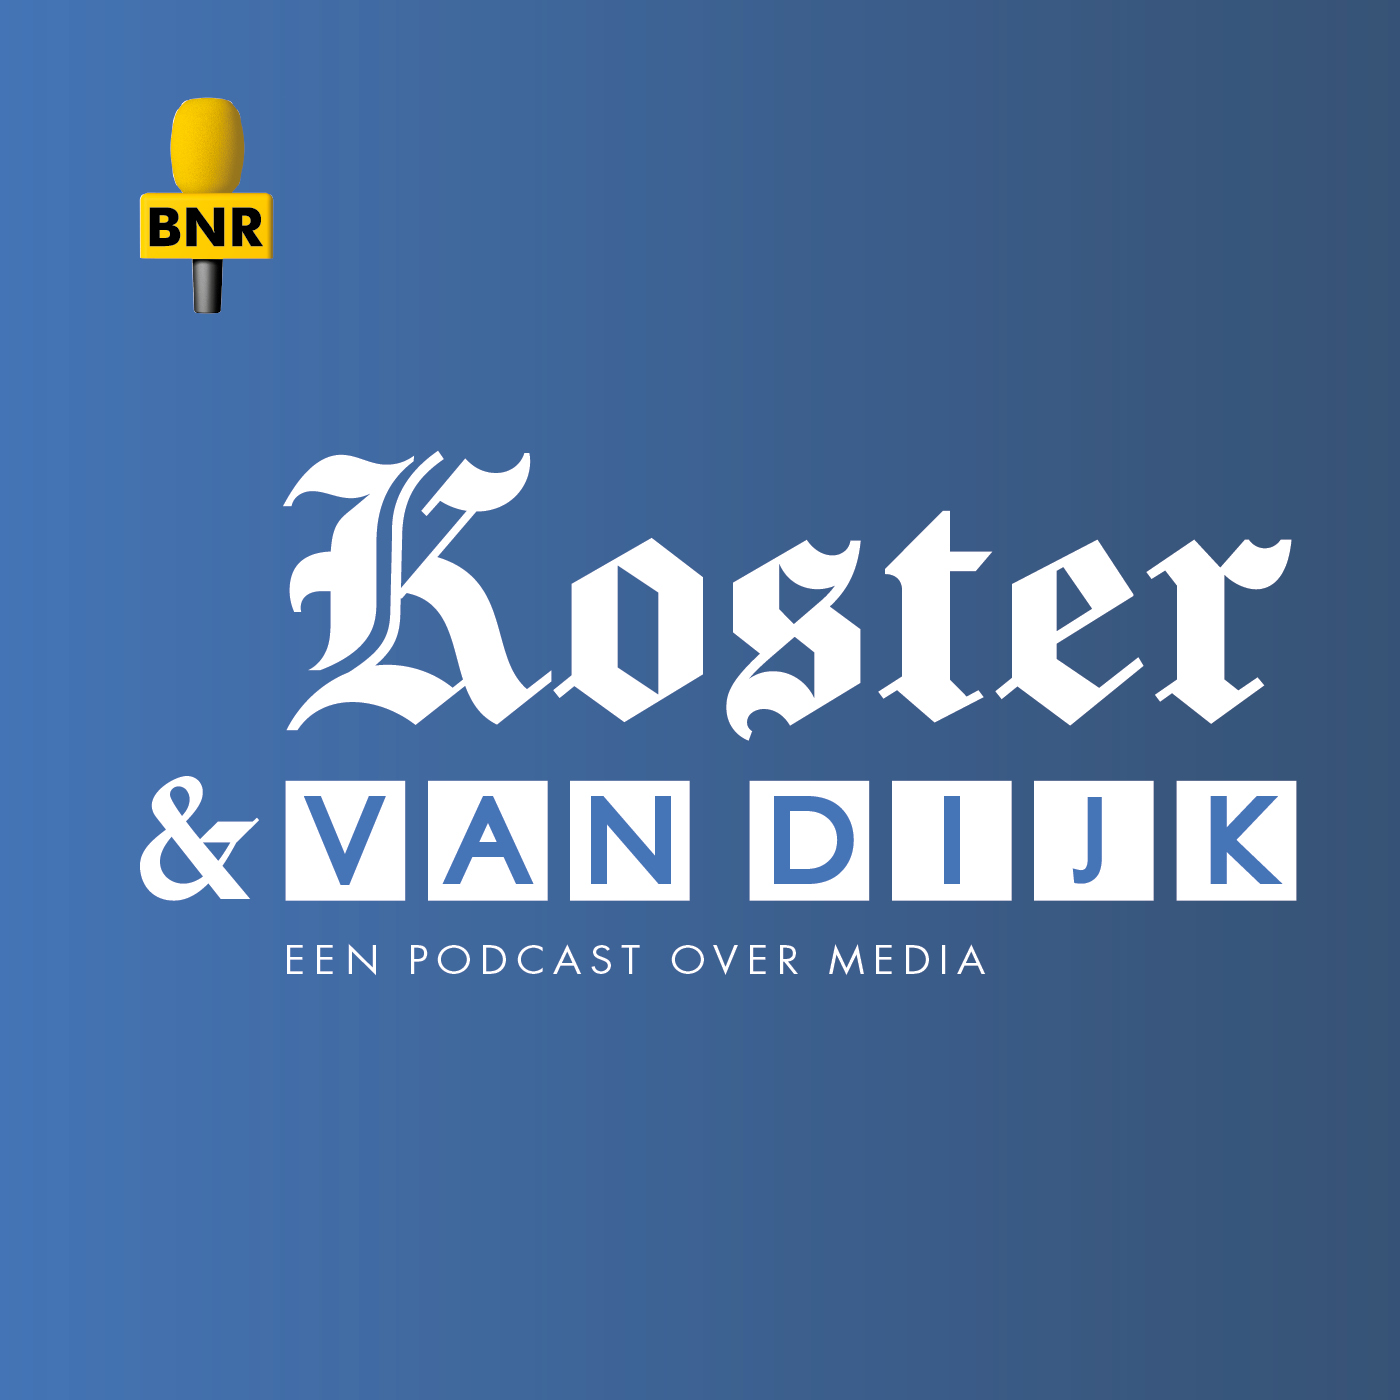 Koster & Van Dijk: D66, van het kastje naar de muur